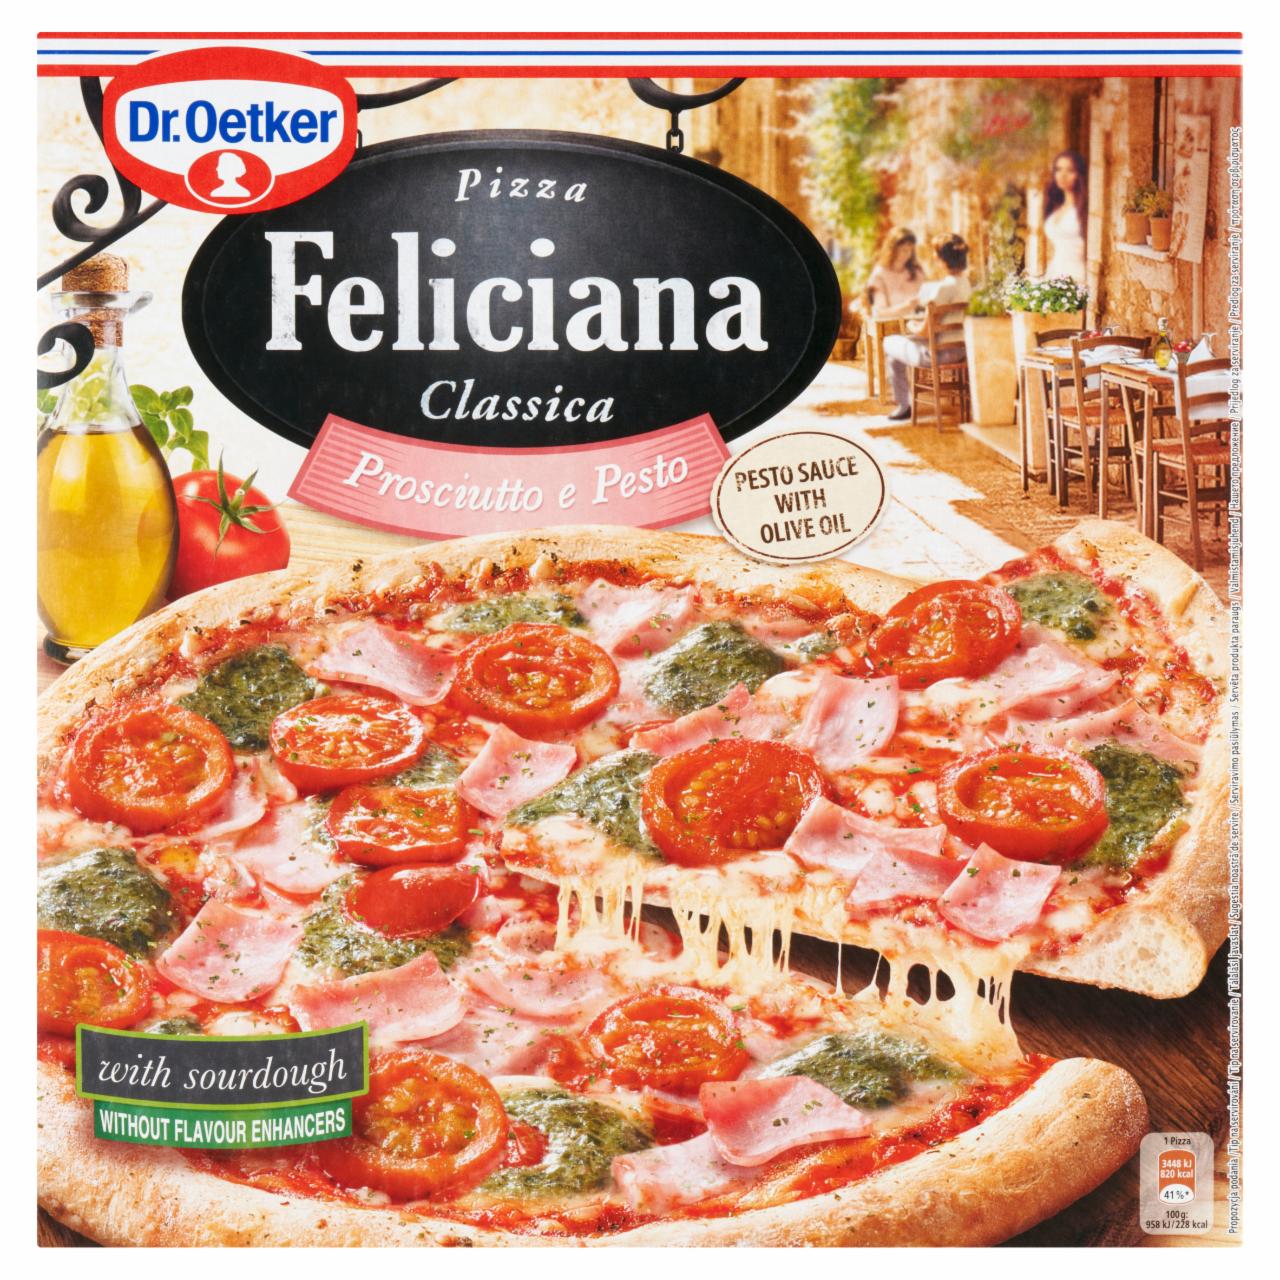 Fotografie - Pizza Feliciana Classica Prosciutto e Pesto Dr.Oetker